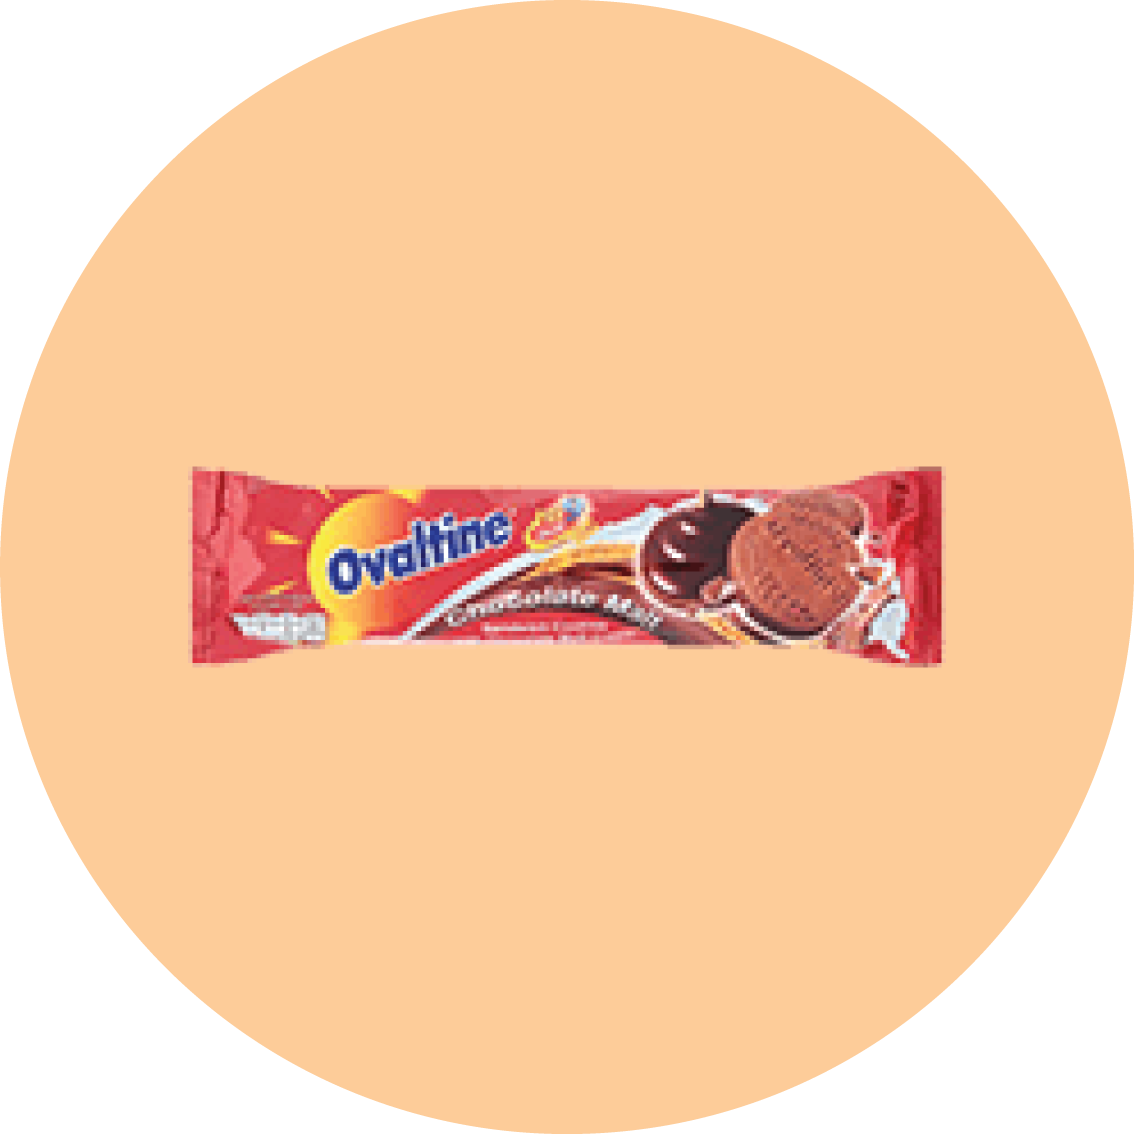 ovaltine-product